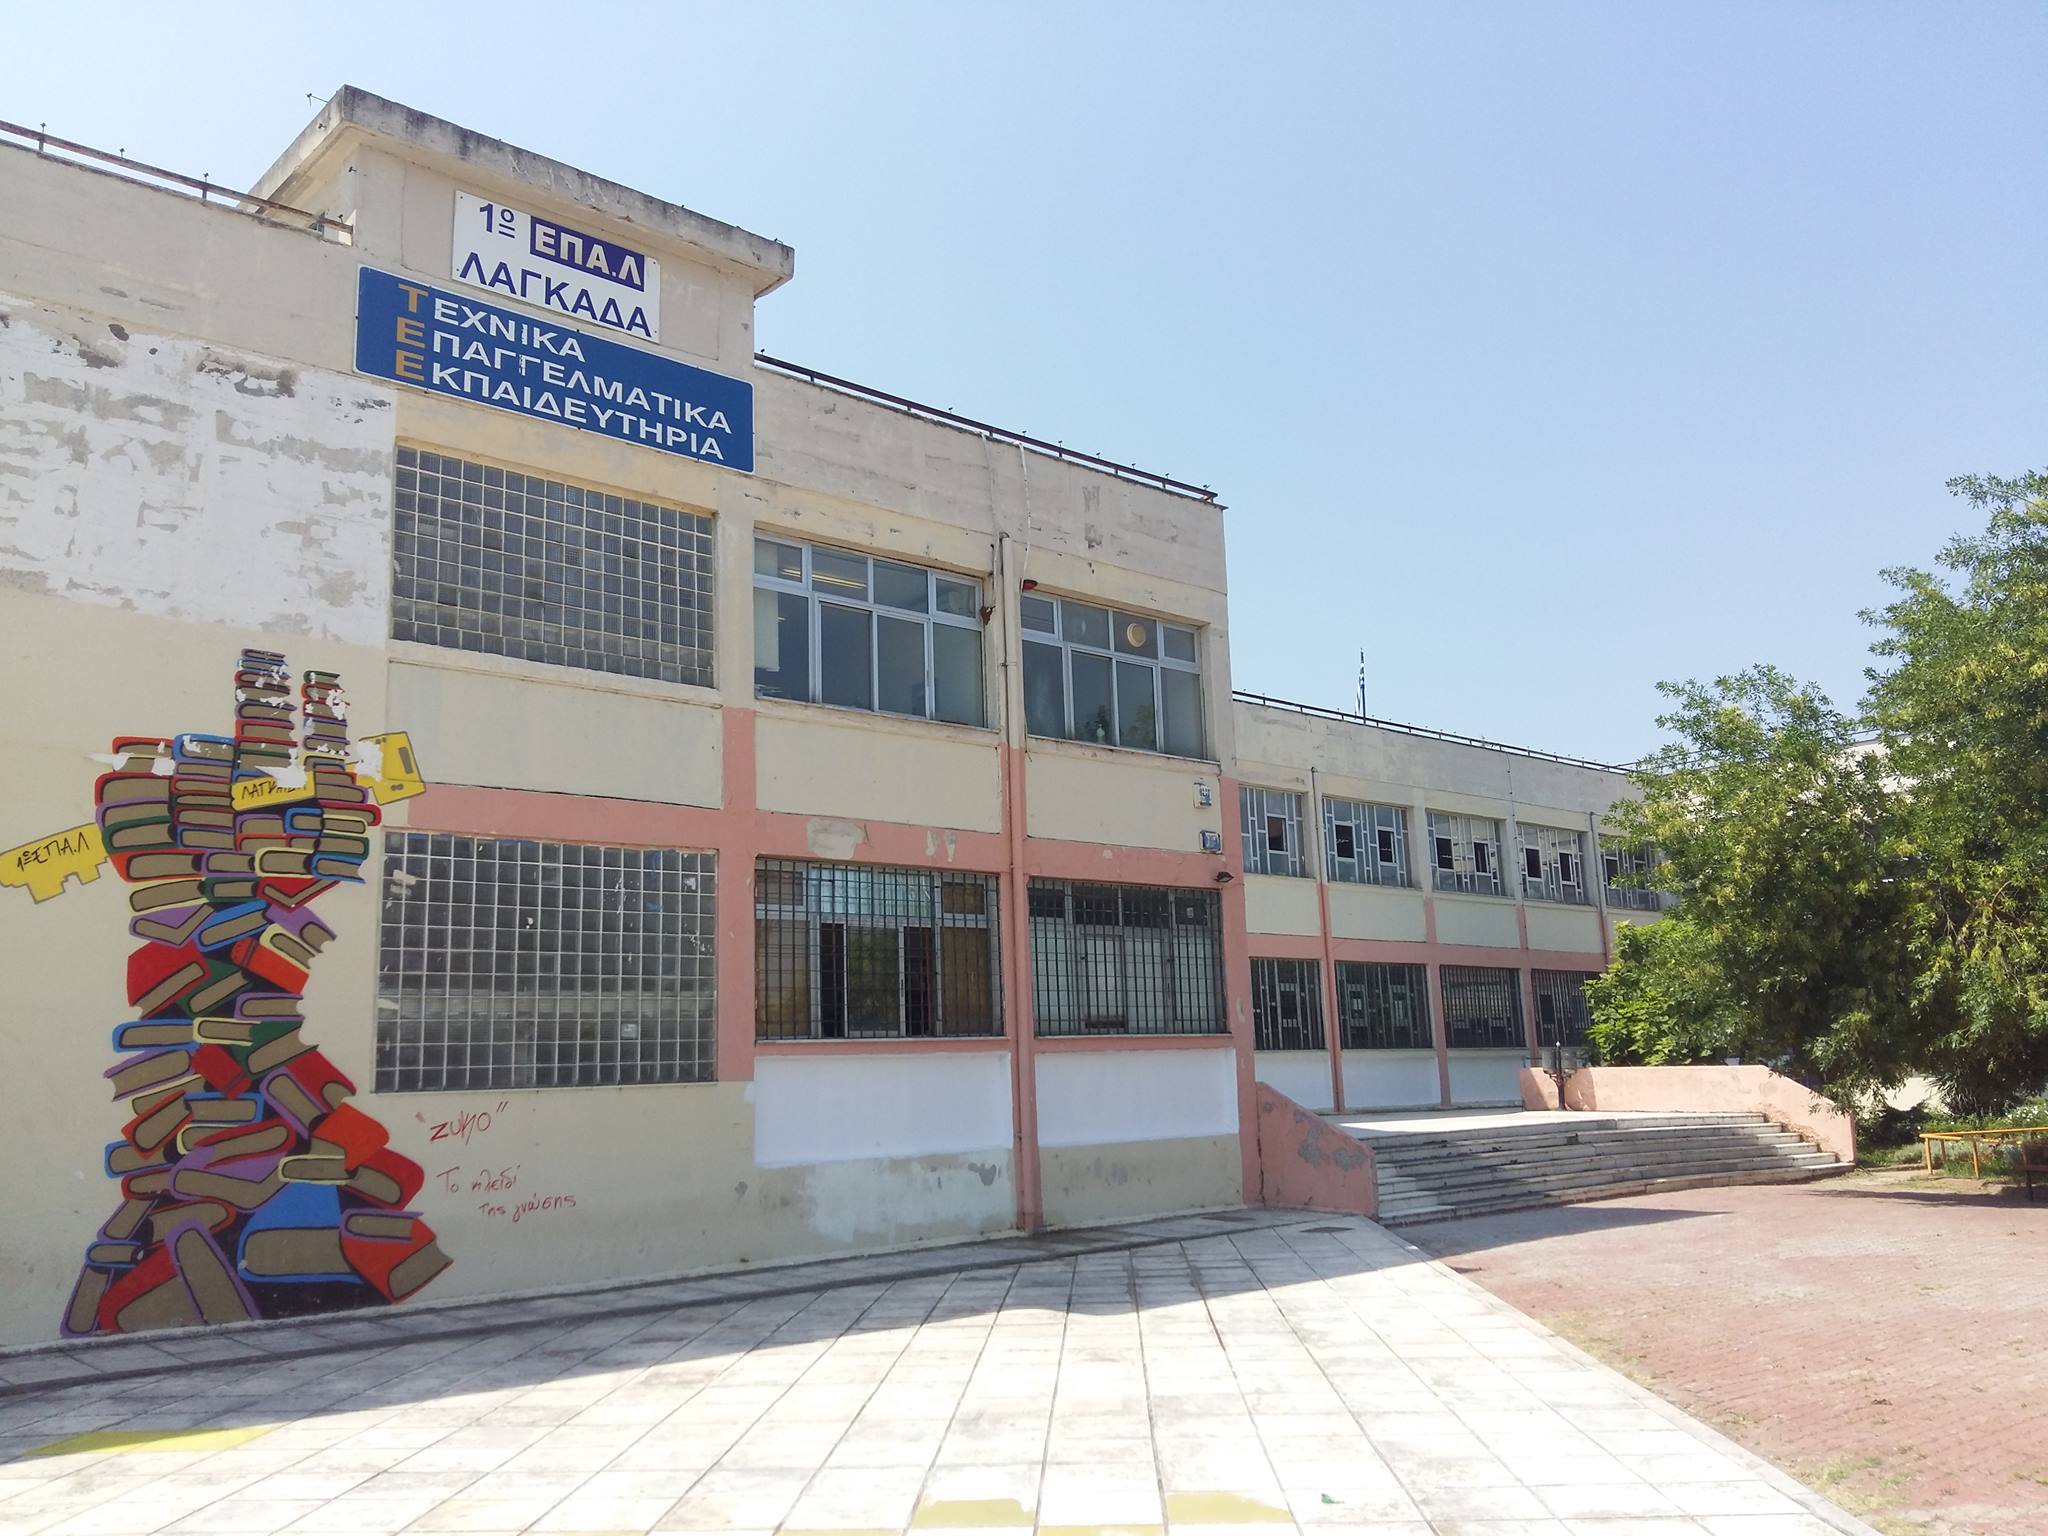 Θεσσαλονίκη: Έδειραν και έστειλαν σε νοσοκομείο μαθητή στο ΕΠΑΛ Λαγκαδά - Πέντε συλλήψεις